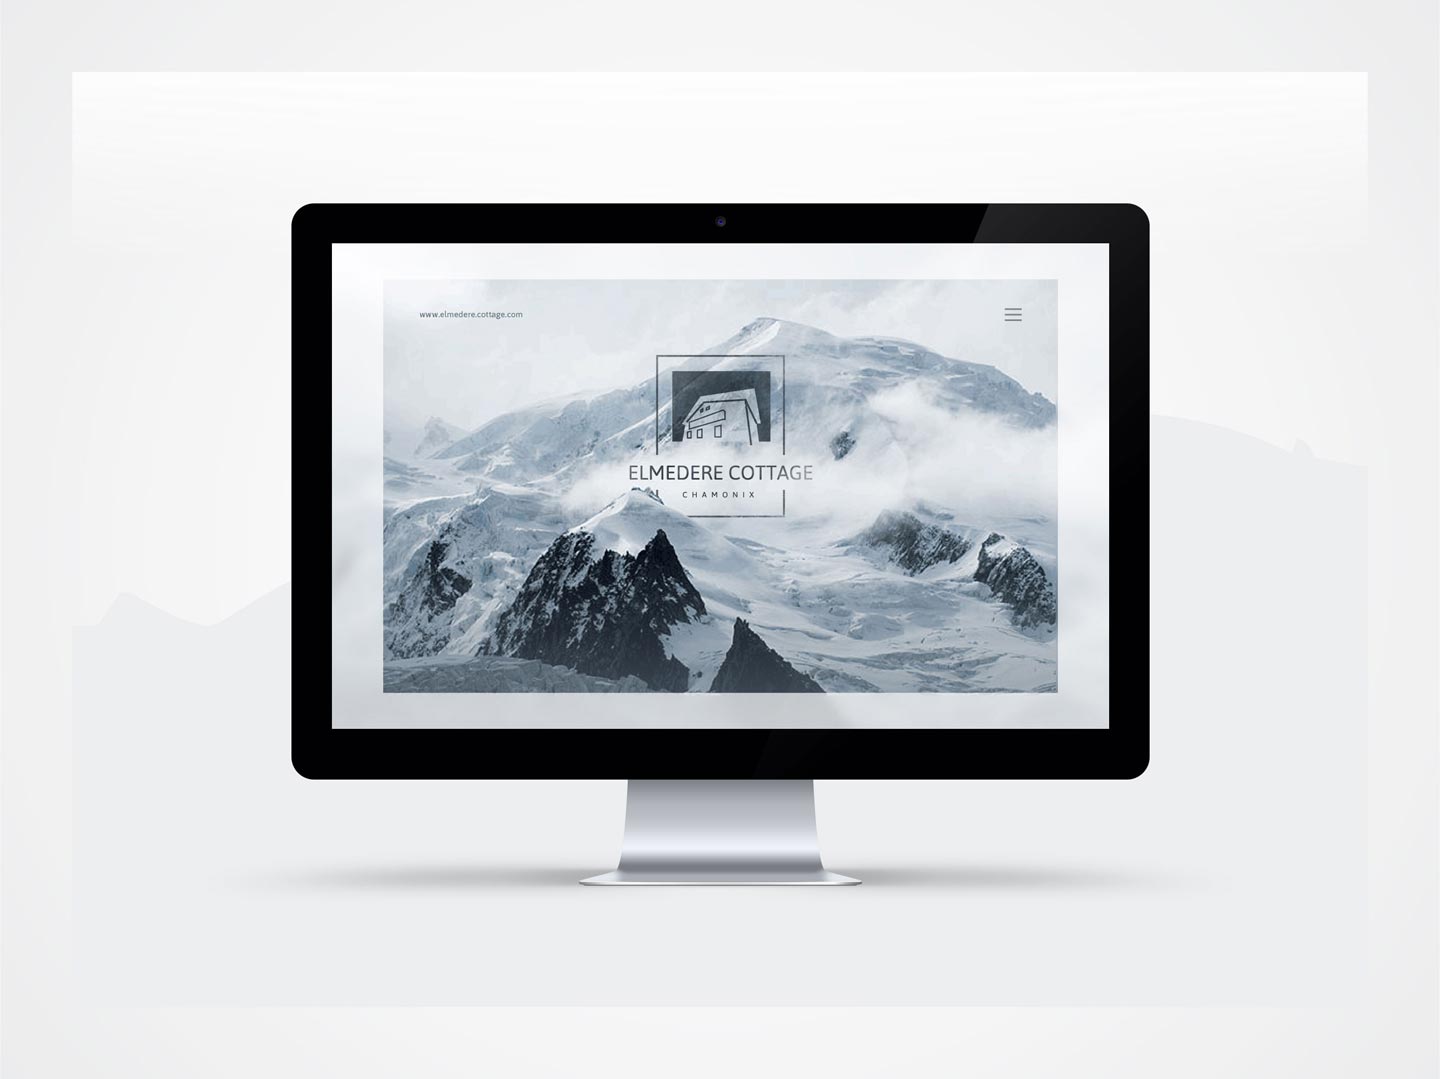 Eldmederre Cottage - Website design